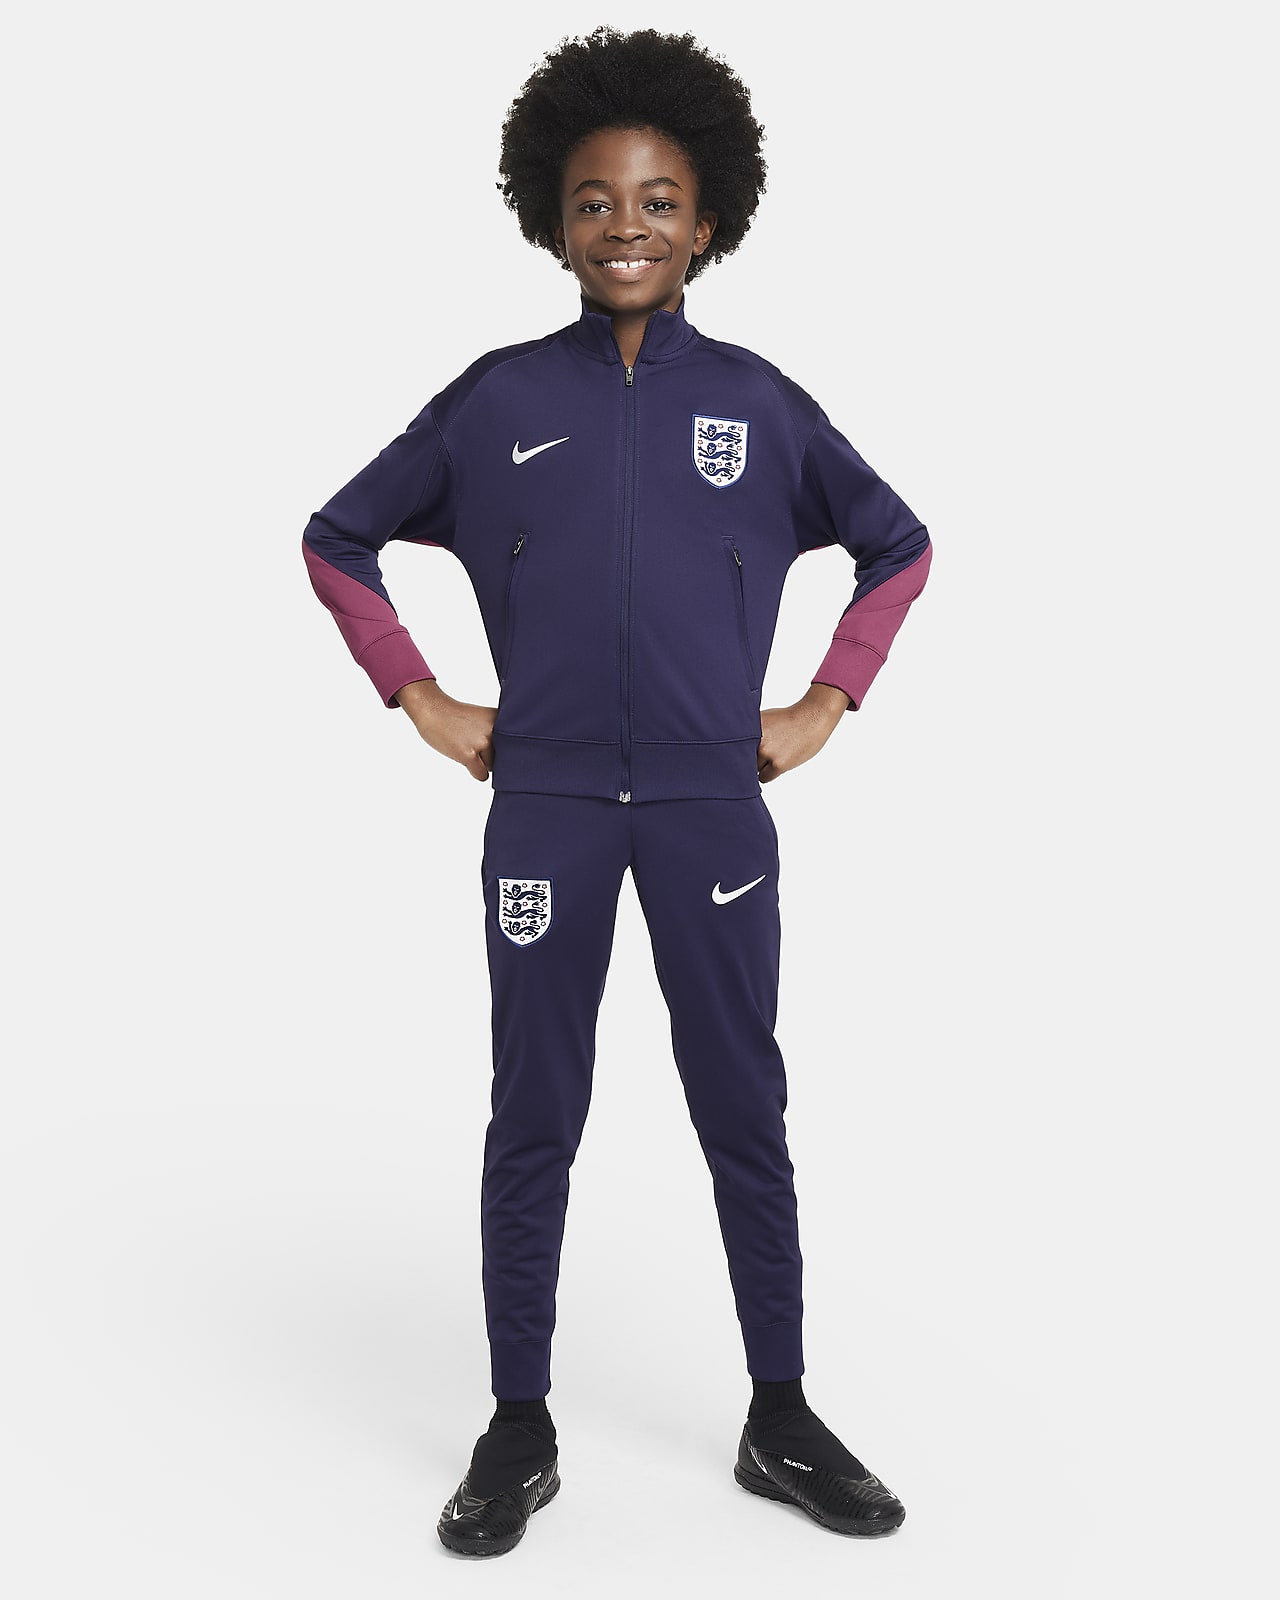 Engeland Strike Nike Dri-FIT knit voetbaltrainingspak voor kids